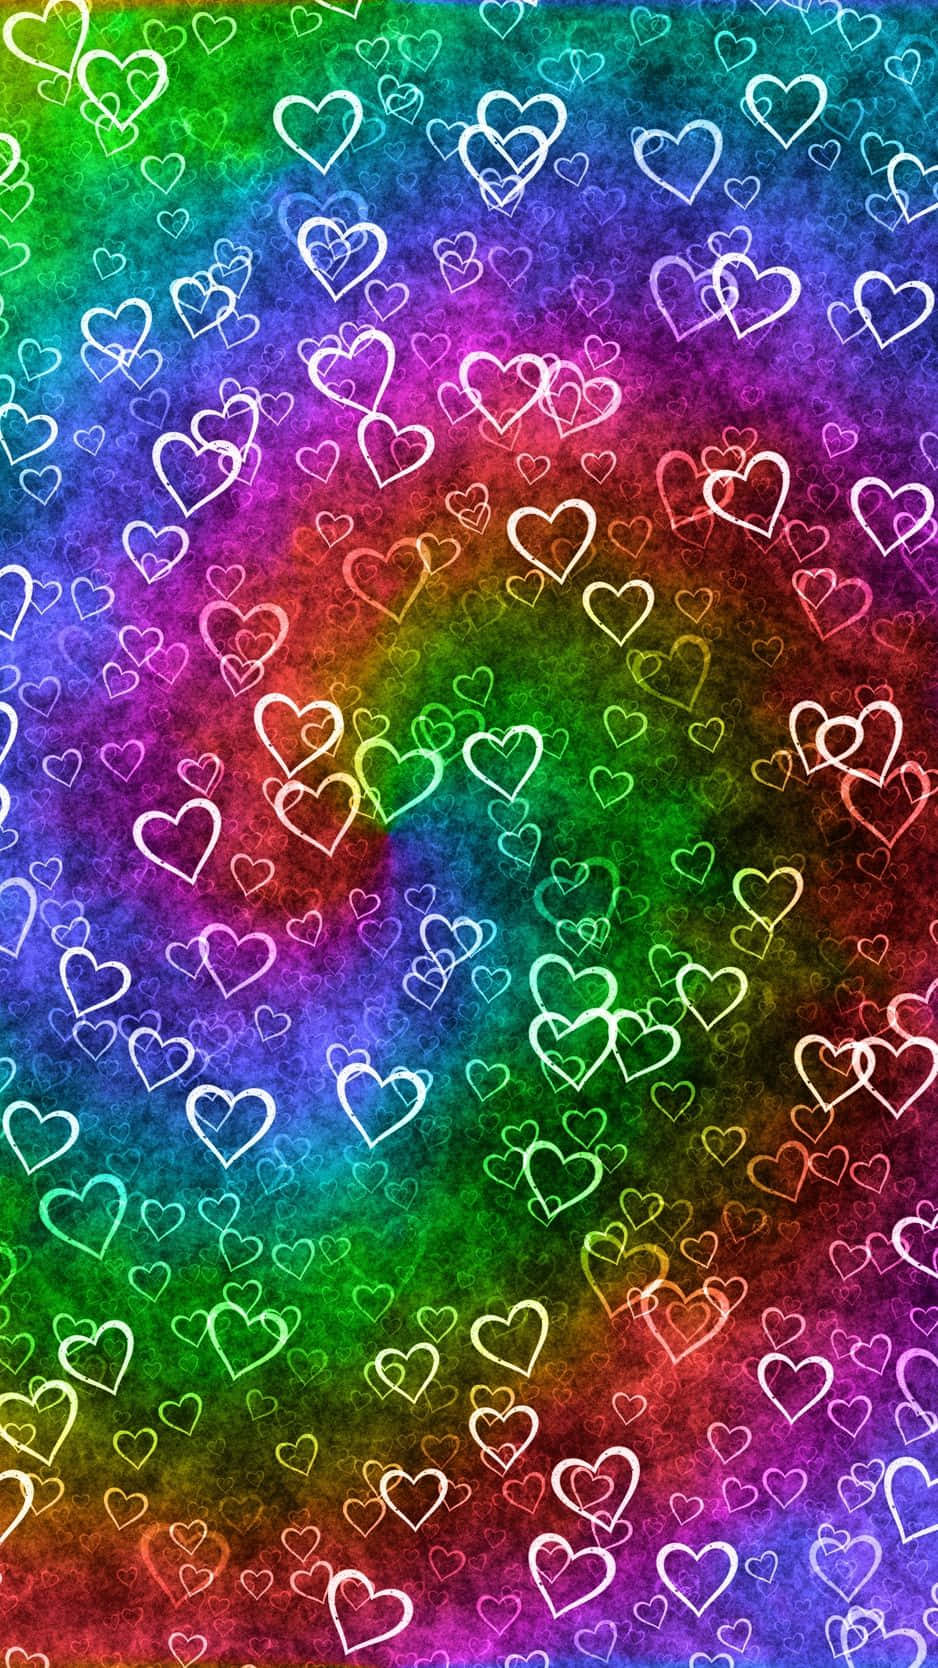 Fejrer Kærlighed Med En Regnbuehjerte Wallpaper